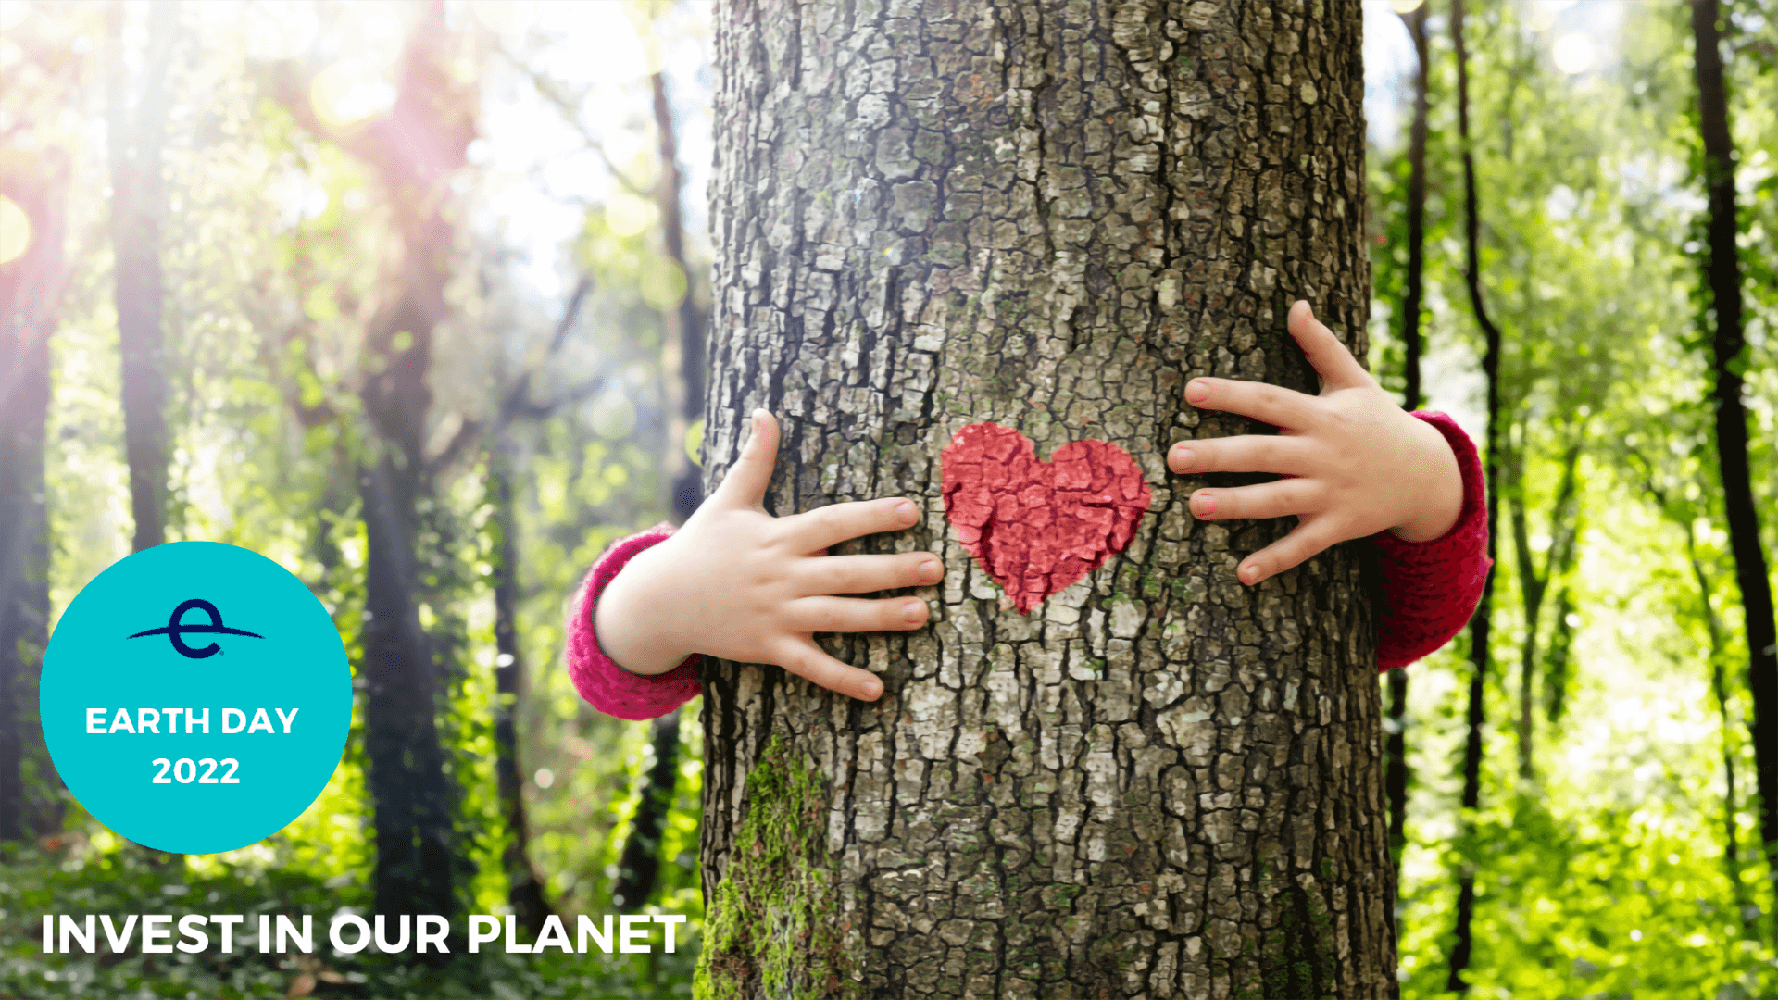 Featured image for “Earth Day 2022: i risultati ottenuti, i passi ancora da fare e l’impegno costante per salvaguardare il nostro pianeta”